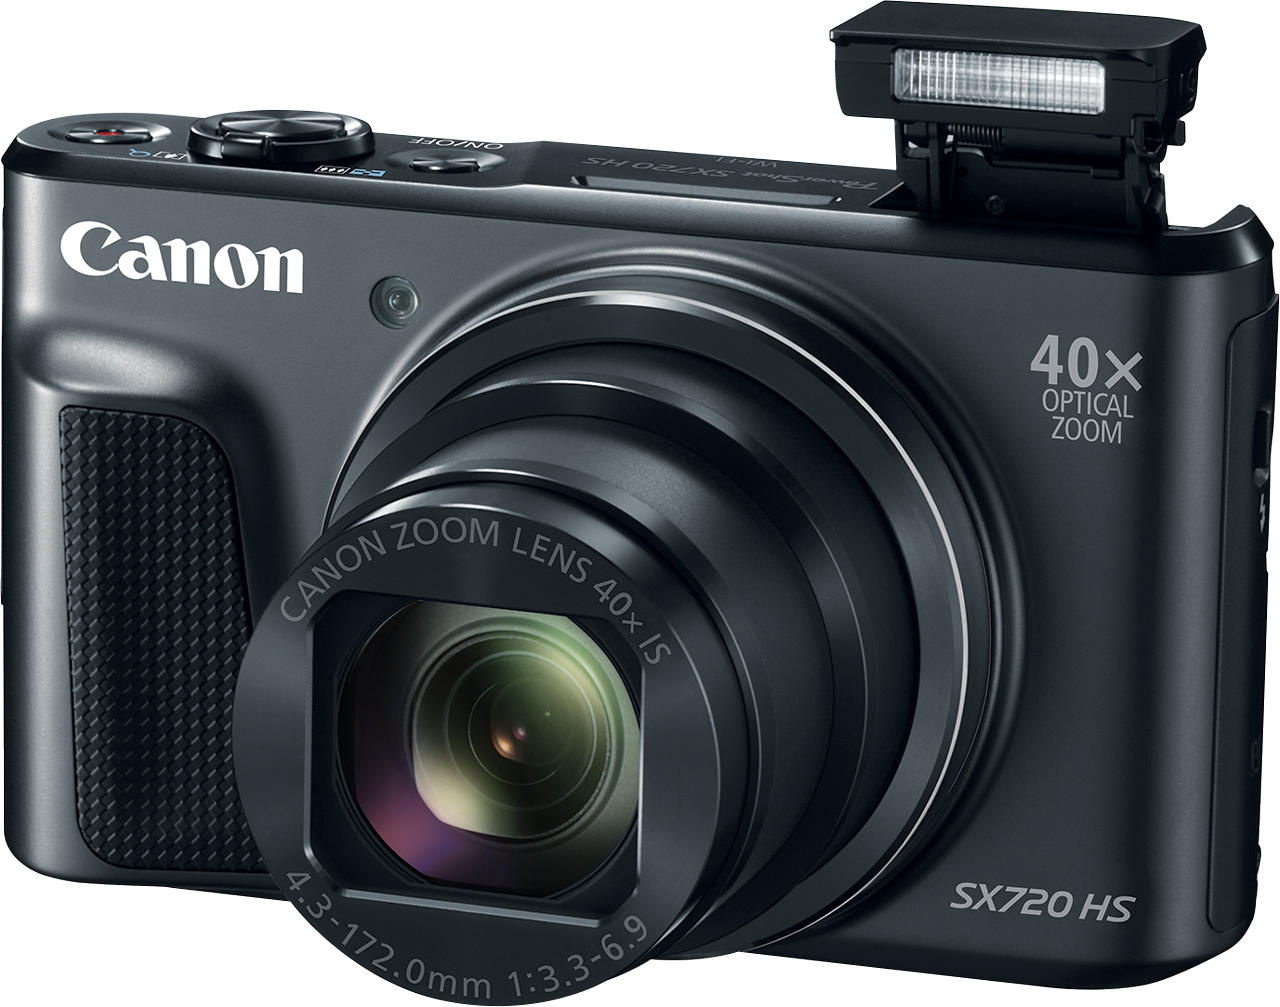 Canon PowerShot SX720 HS to kompaktowy i funkcjonalny aparat z 40-krotnym zoomem optycznym